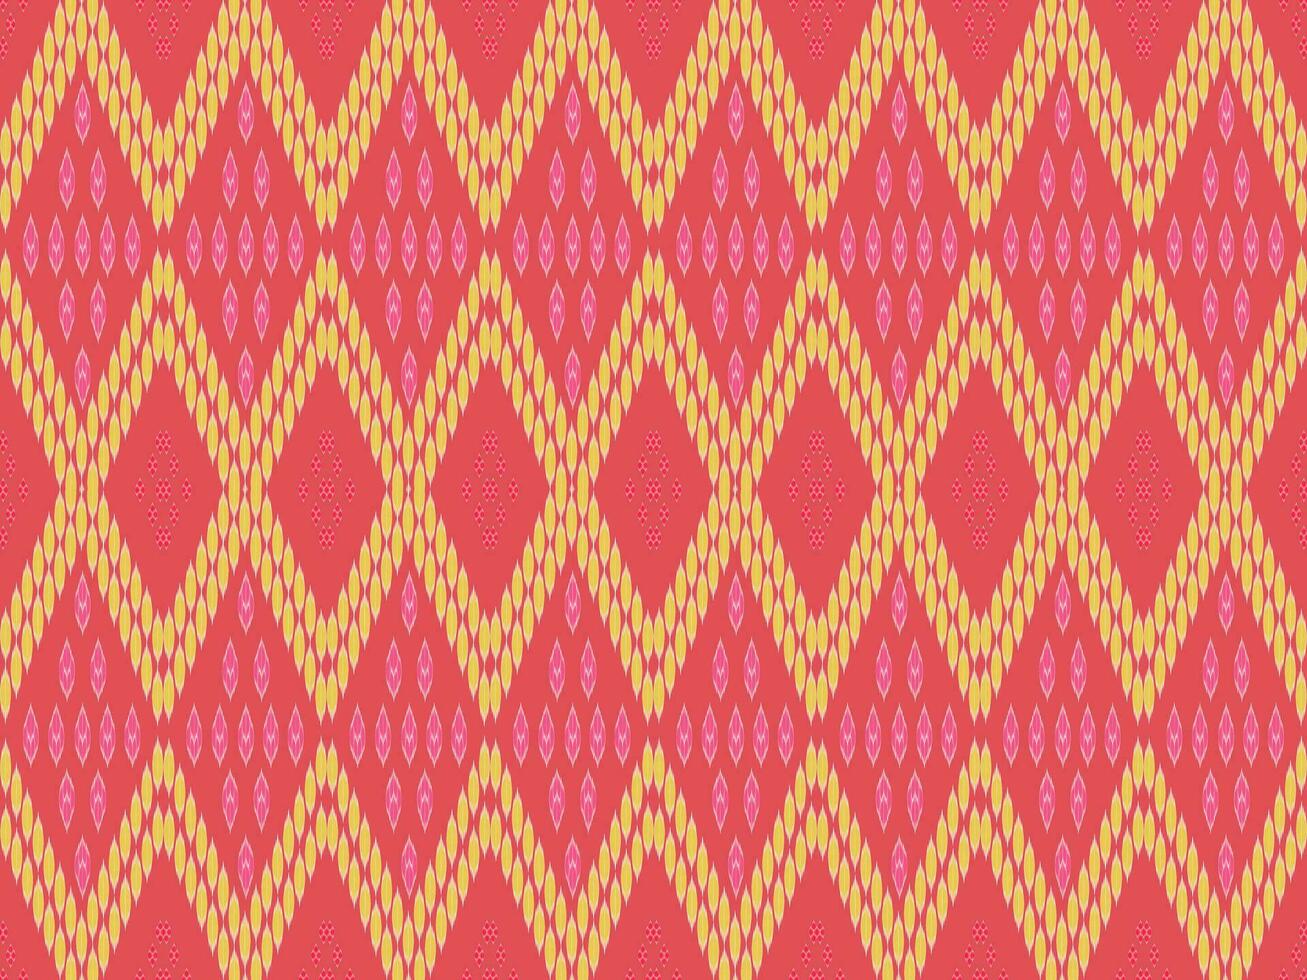 abstrakt ethnisch aztekisch geometrisch Muster Design zum Hintergrund: amerikanisch, mexikanisch, indisch, böhmisch style.vector,illustration,stoff,kleidung,teppich,textilien,verpackung,batik,stickerei,strickwaren,ikat vektor